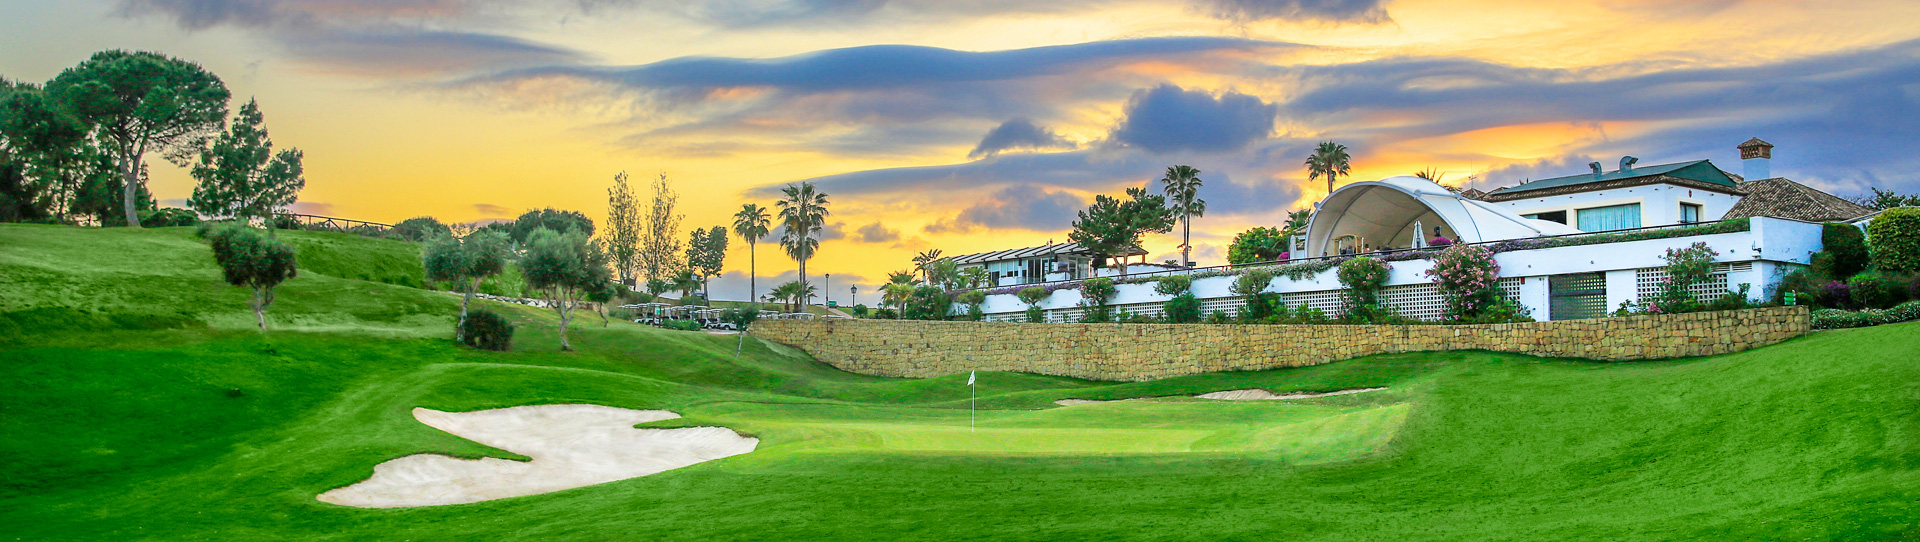 Spain golf courses - La Cala Asia - Photo 2